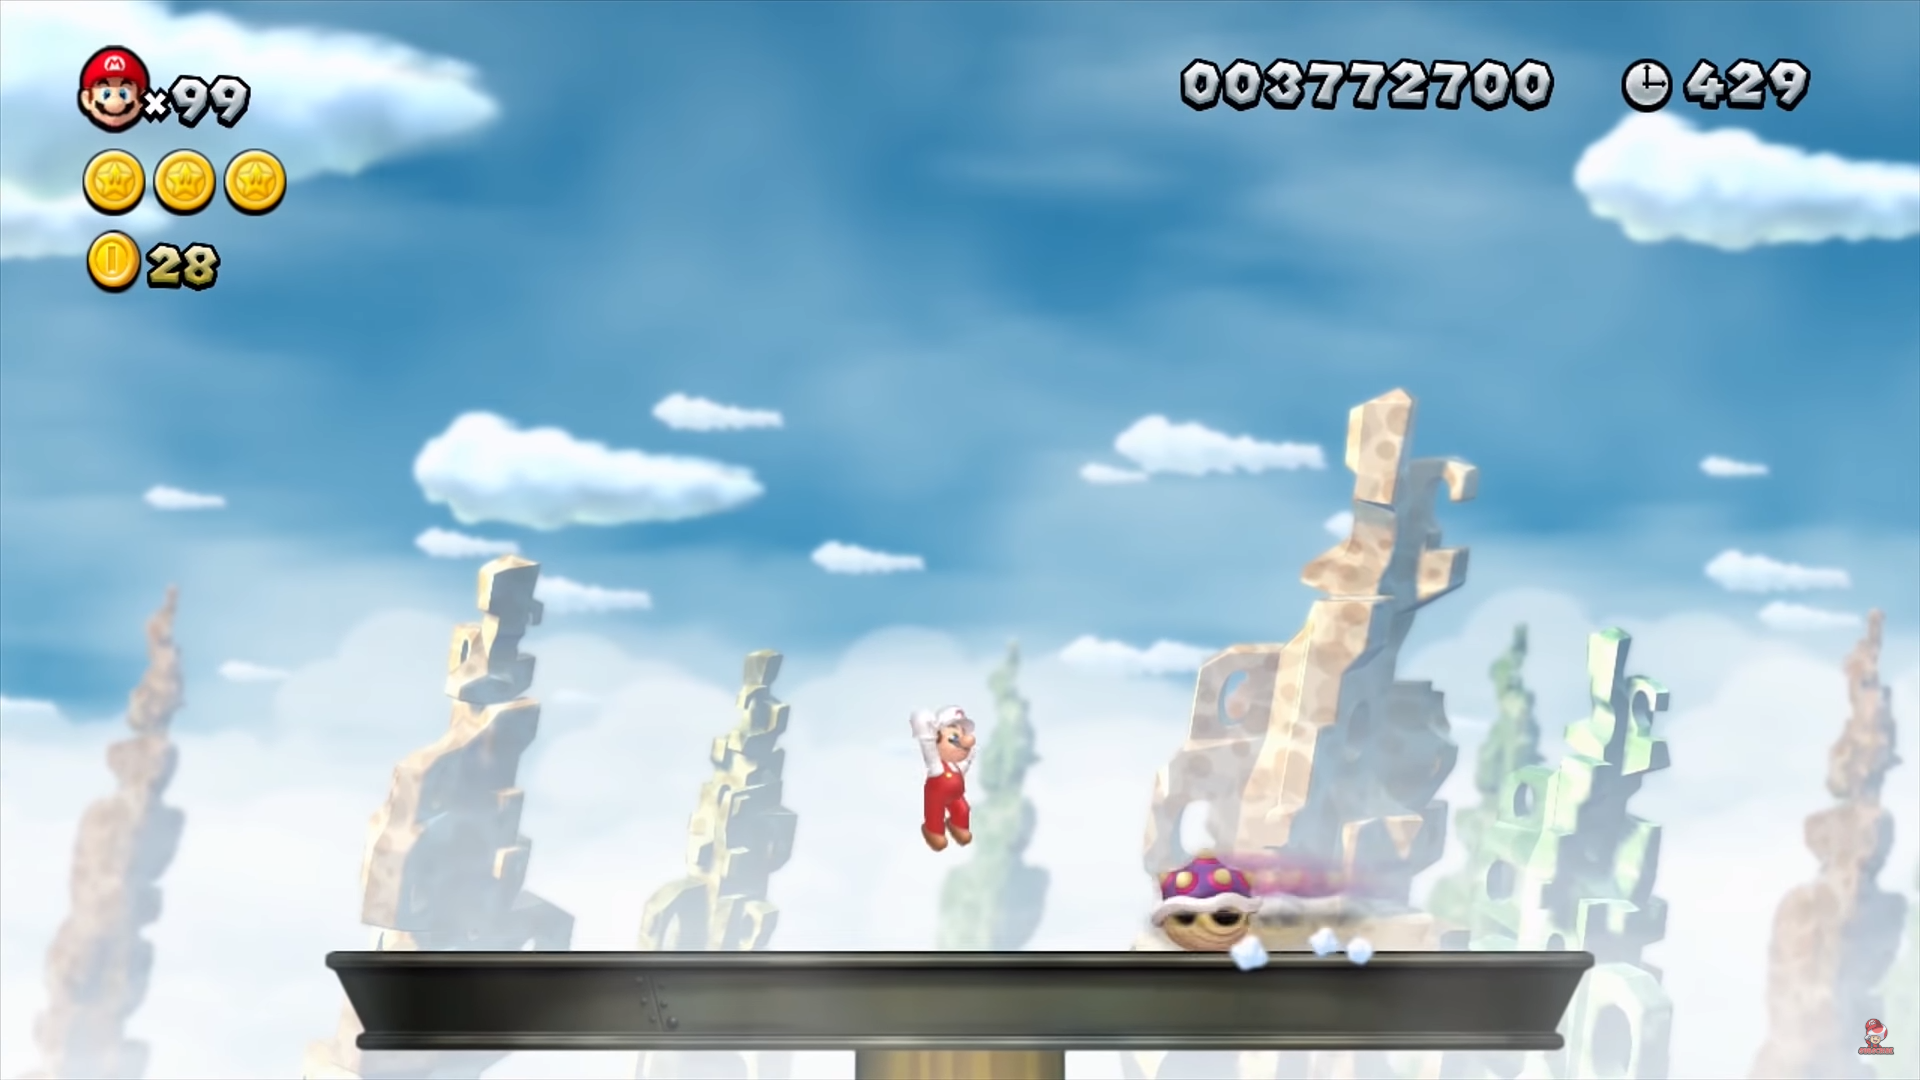 New Super Mario Bros. U nastavak je istoimene igre za Wii, a dijele i sličnu ideju. Posebnost ove igre je asimetričnost, budući da jedan igrač može putem običnog kontrolera za Wii U upravljati likom, a drugi igrač, putem tabletnog kontrolera Wii U-a može manipulirati okolinom u nivou. Tako primjerice, ako Mario padne niz liticu, počne plutati u balončiću iznad nivoa, sve dok ga drugi igrač ne oslobodi dodirivanjem ekrana, odnosno probijanjem balončića.